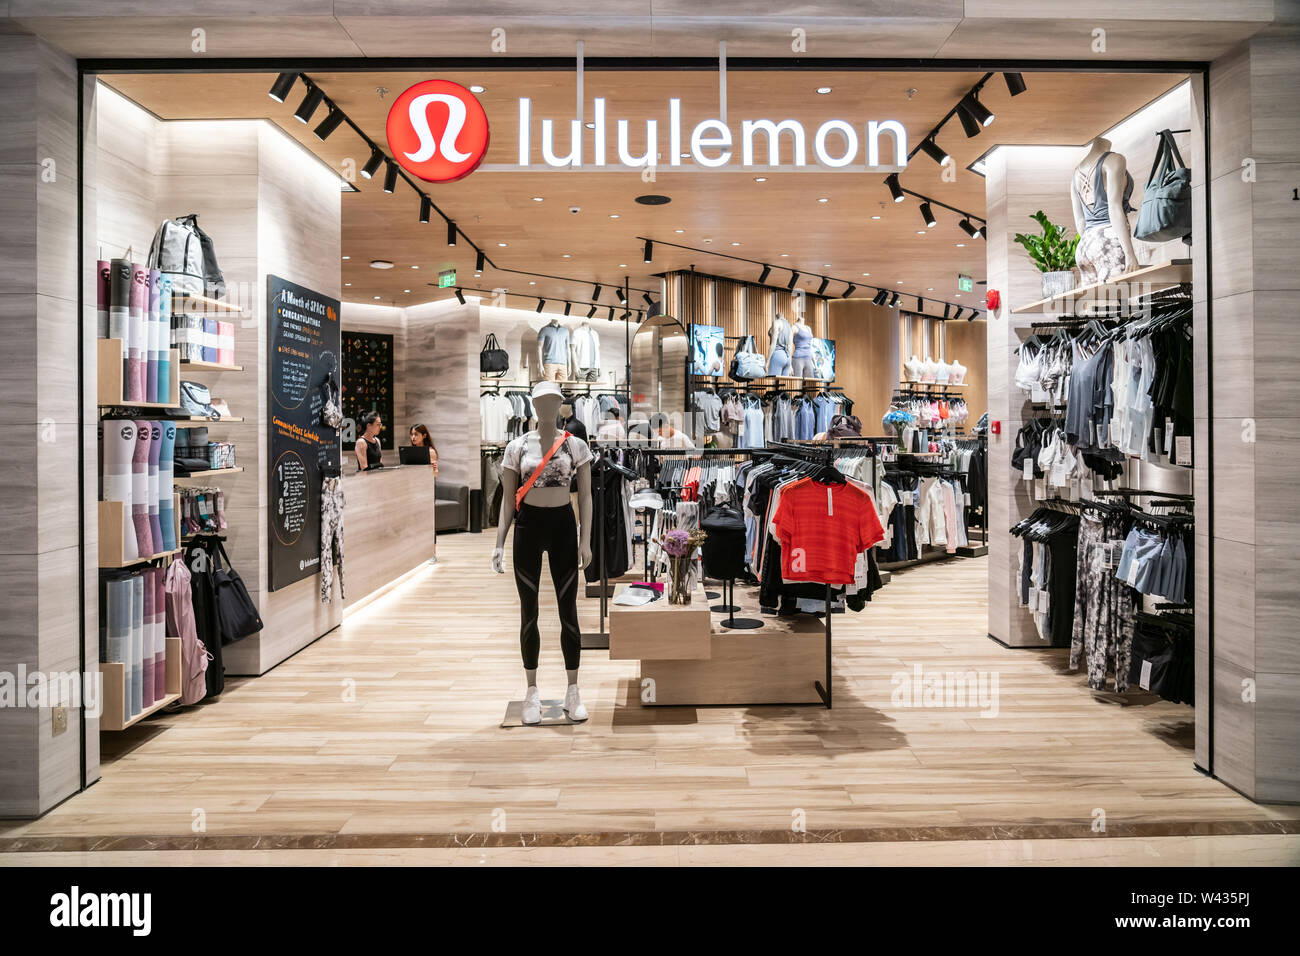 lululemon fashion mall